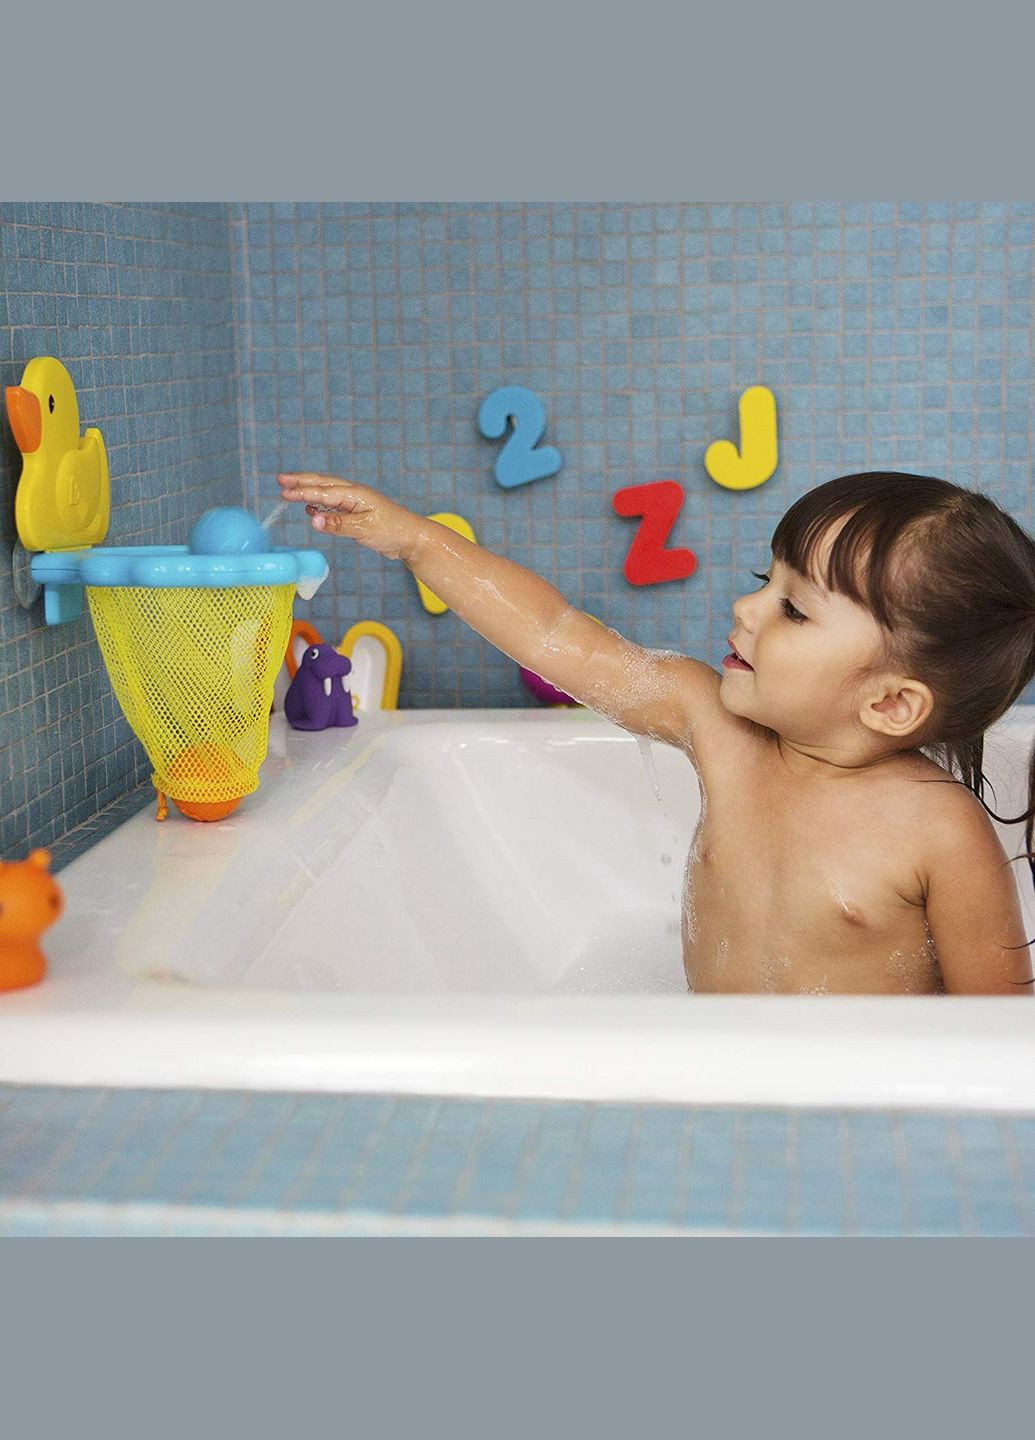 Іграшковий набір для ванни "Duck Dunk" (01241201) Munchkin (290841042)